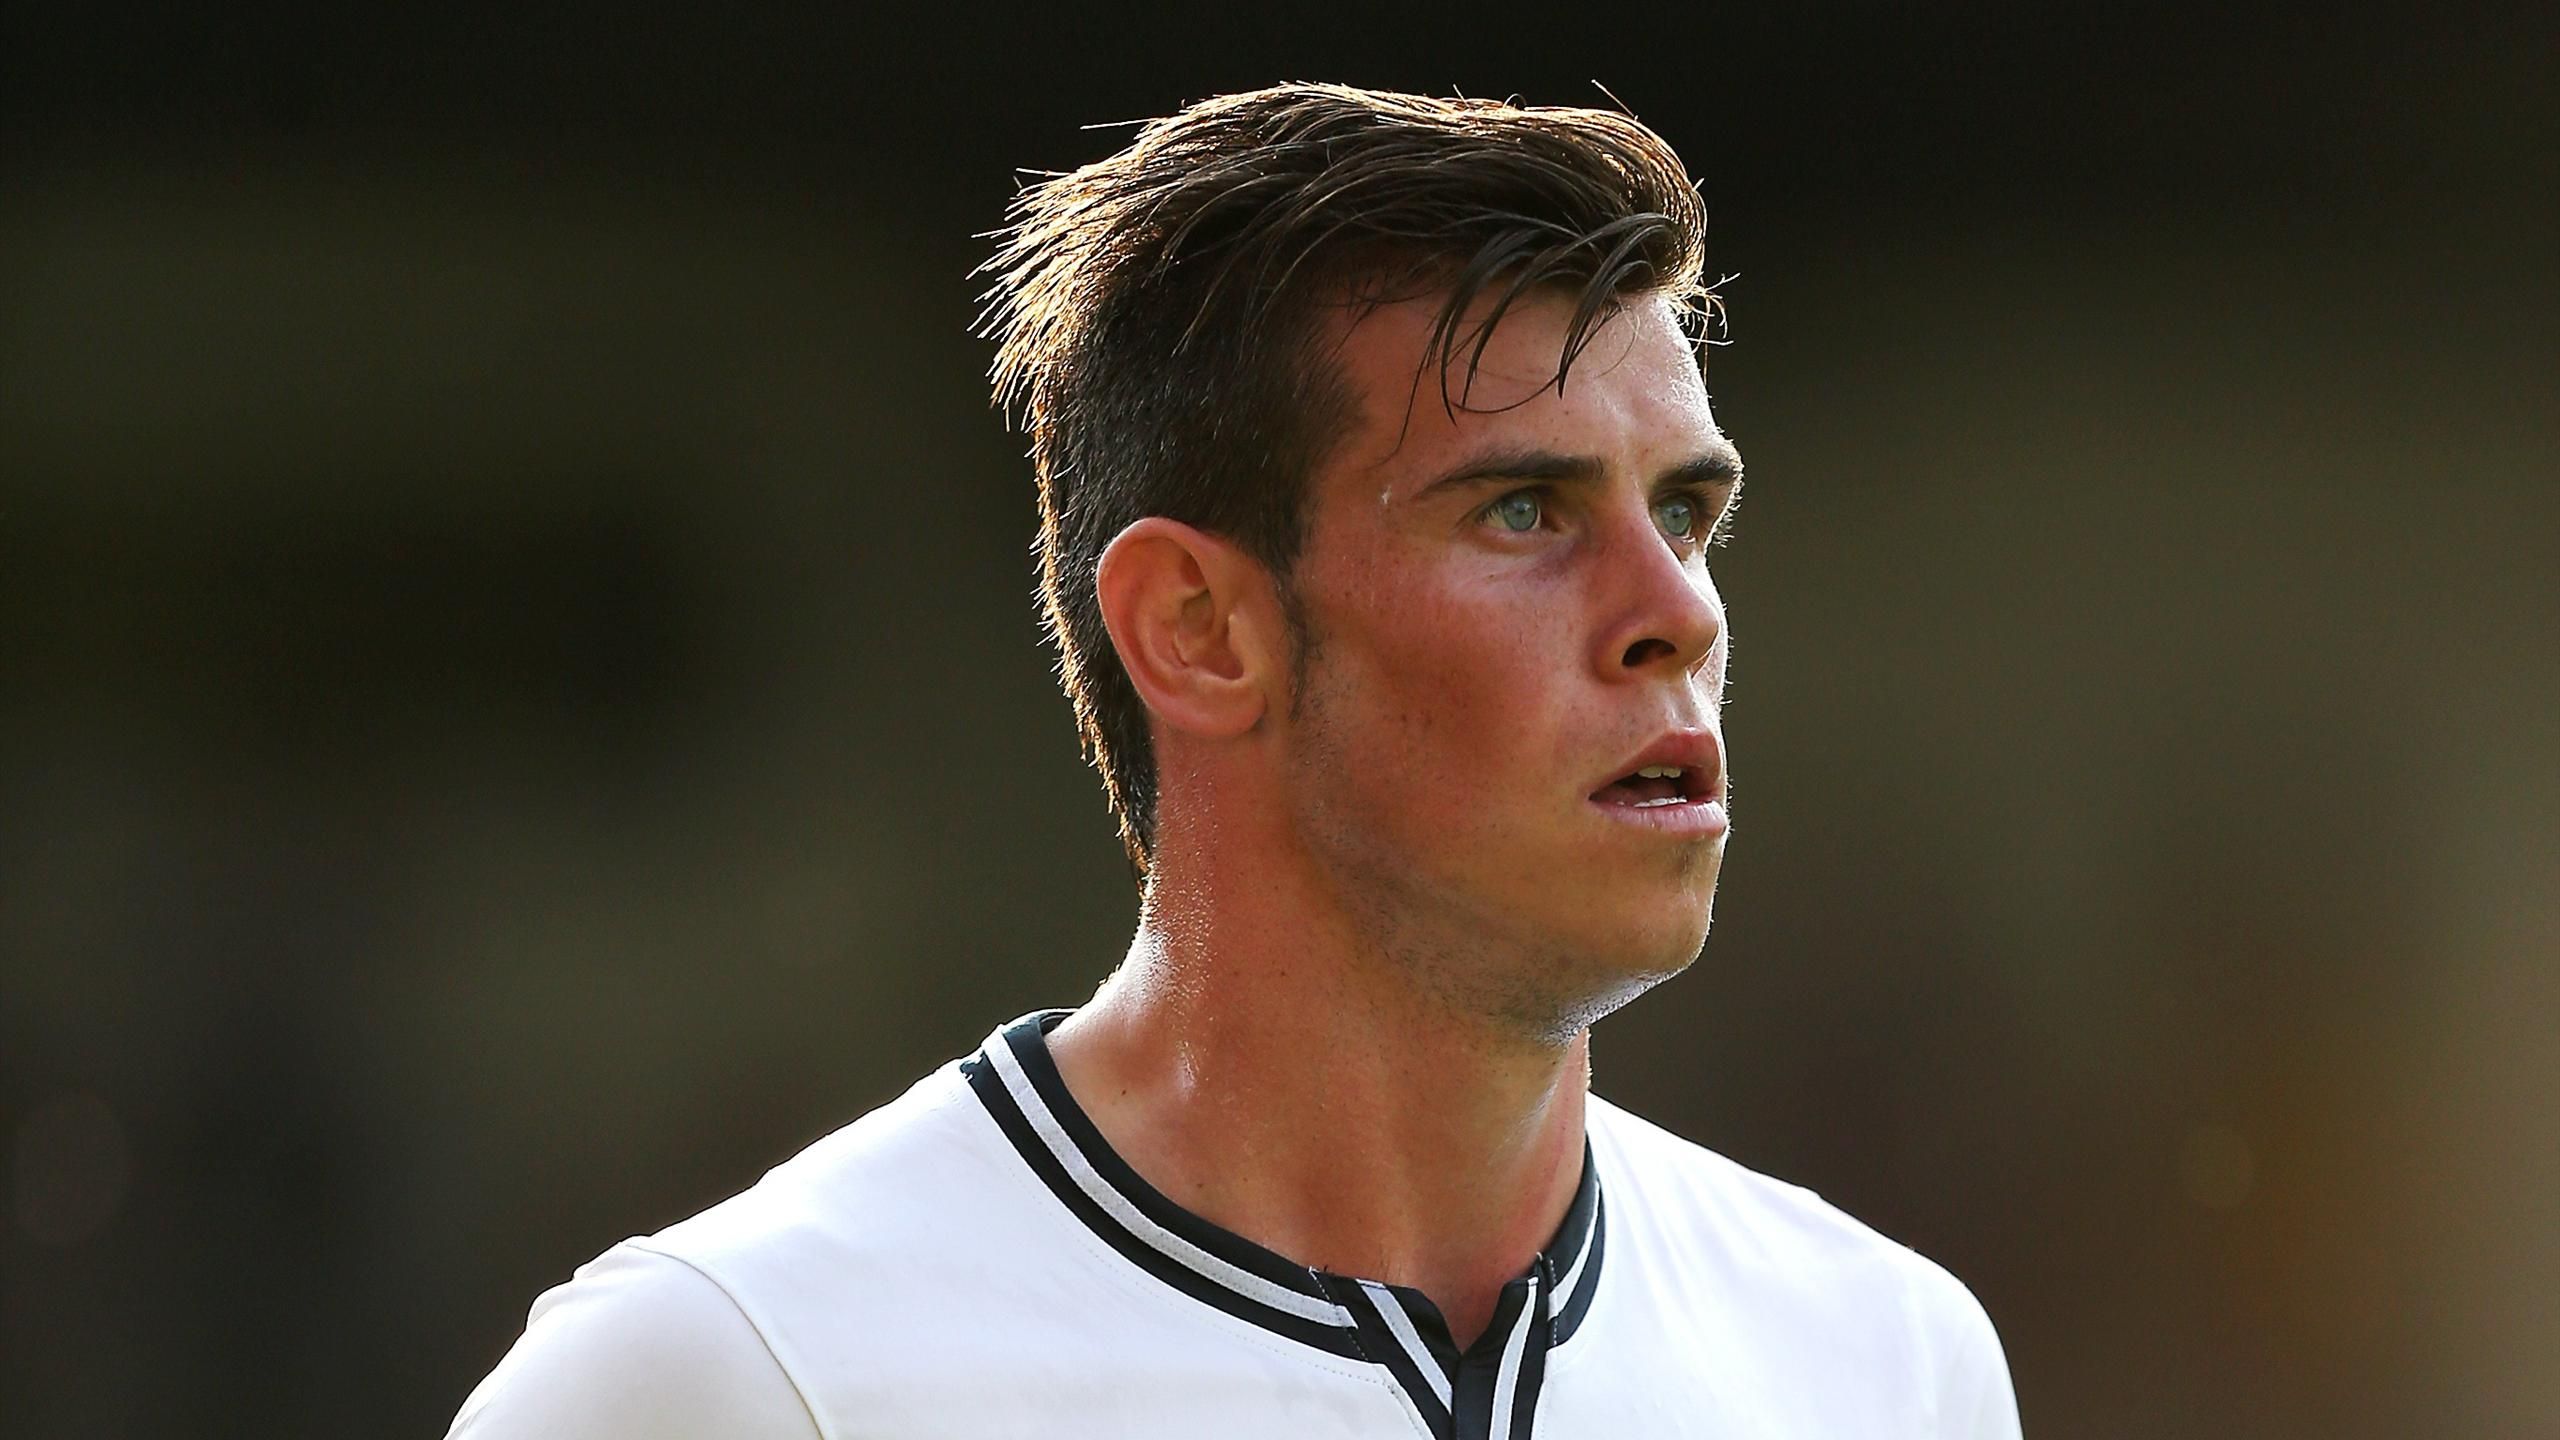 Injured Bale misses Spurs friendly - Eurosport